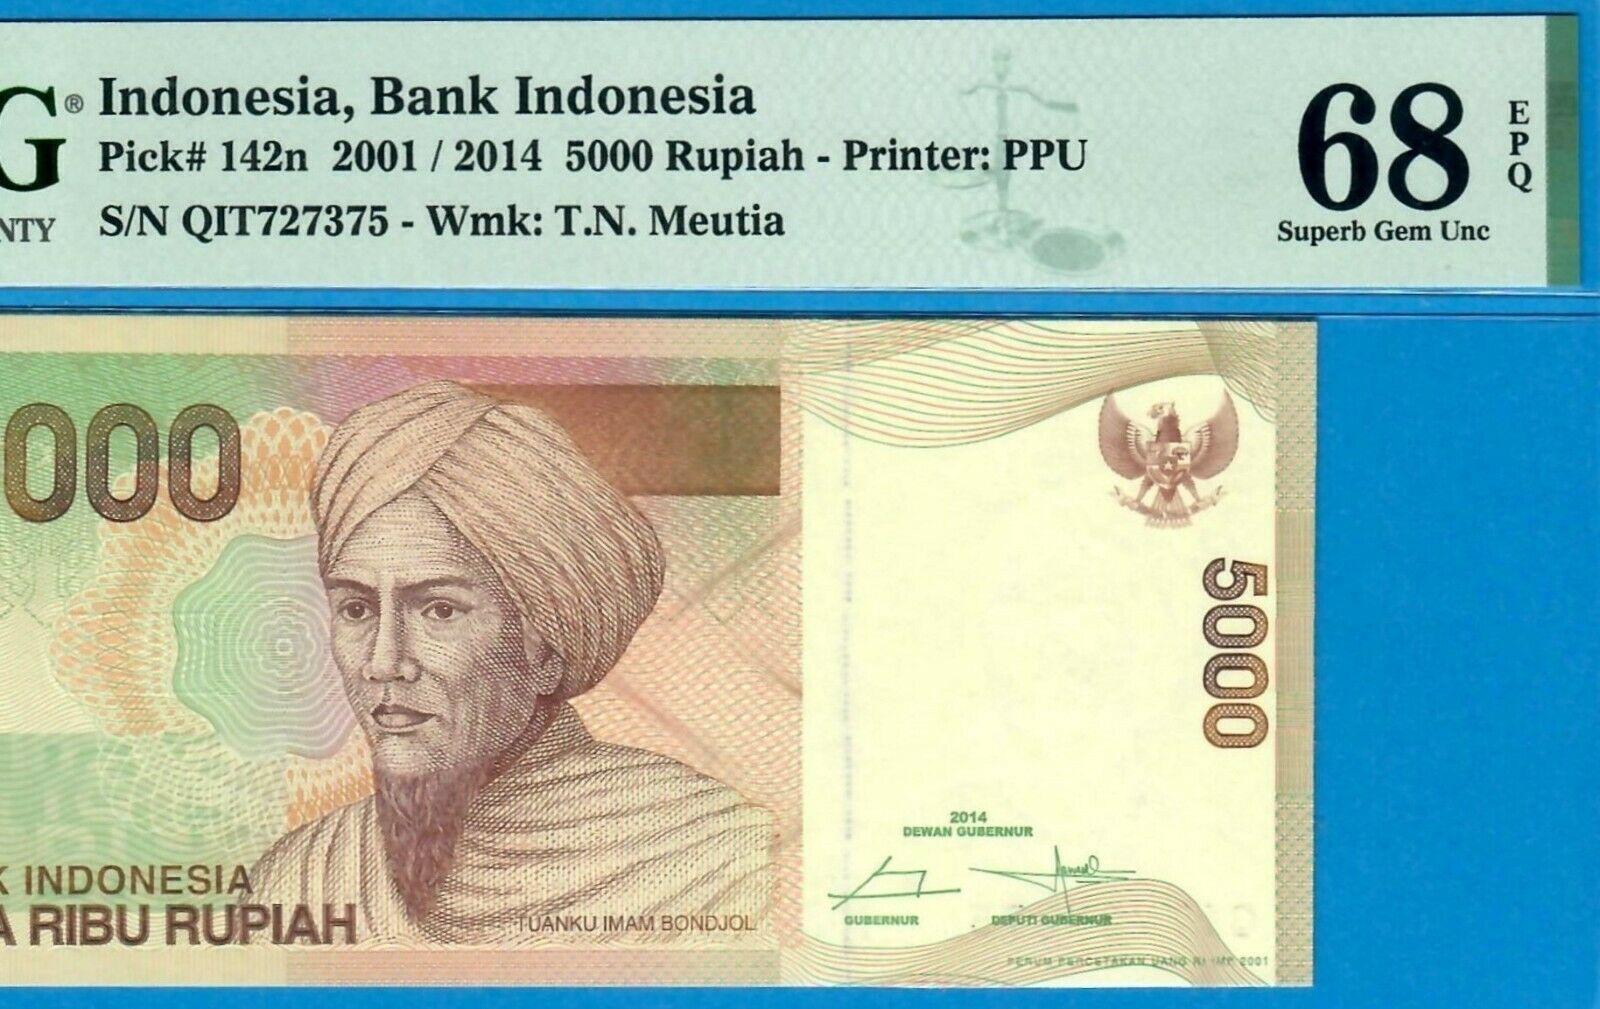 INDONESIA-5000 RUPIAH-2001/2014-S/N 727375-P.142n **PMG 68 EPQ SUPERB GEM UNC**